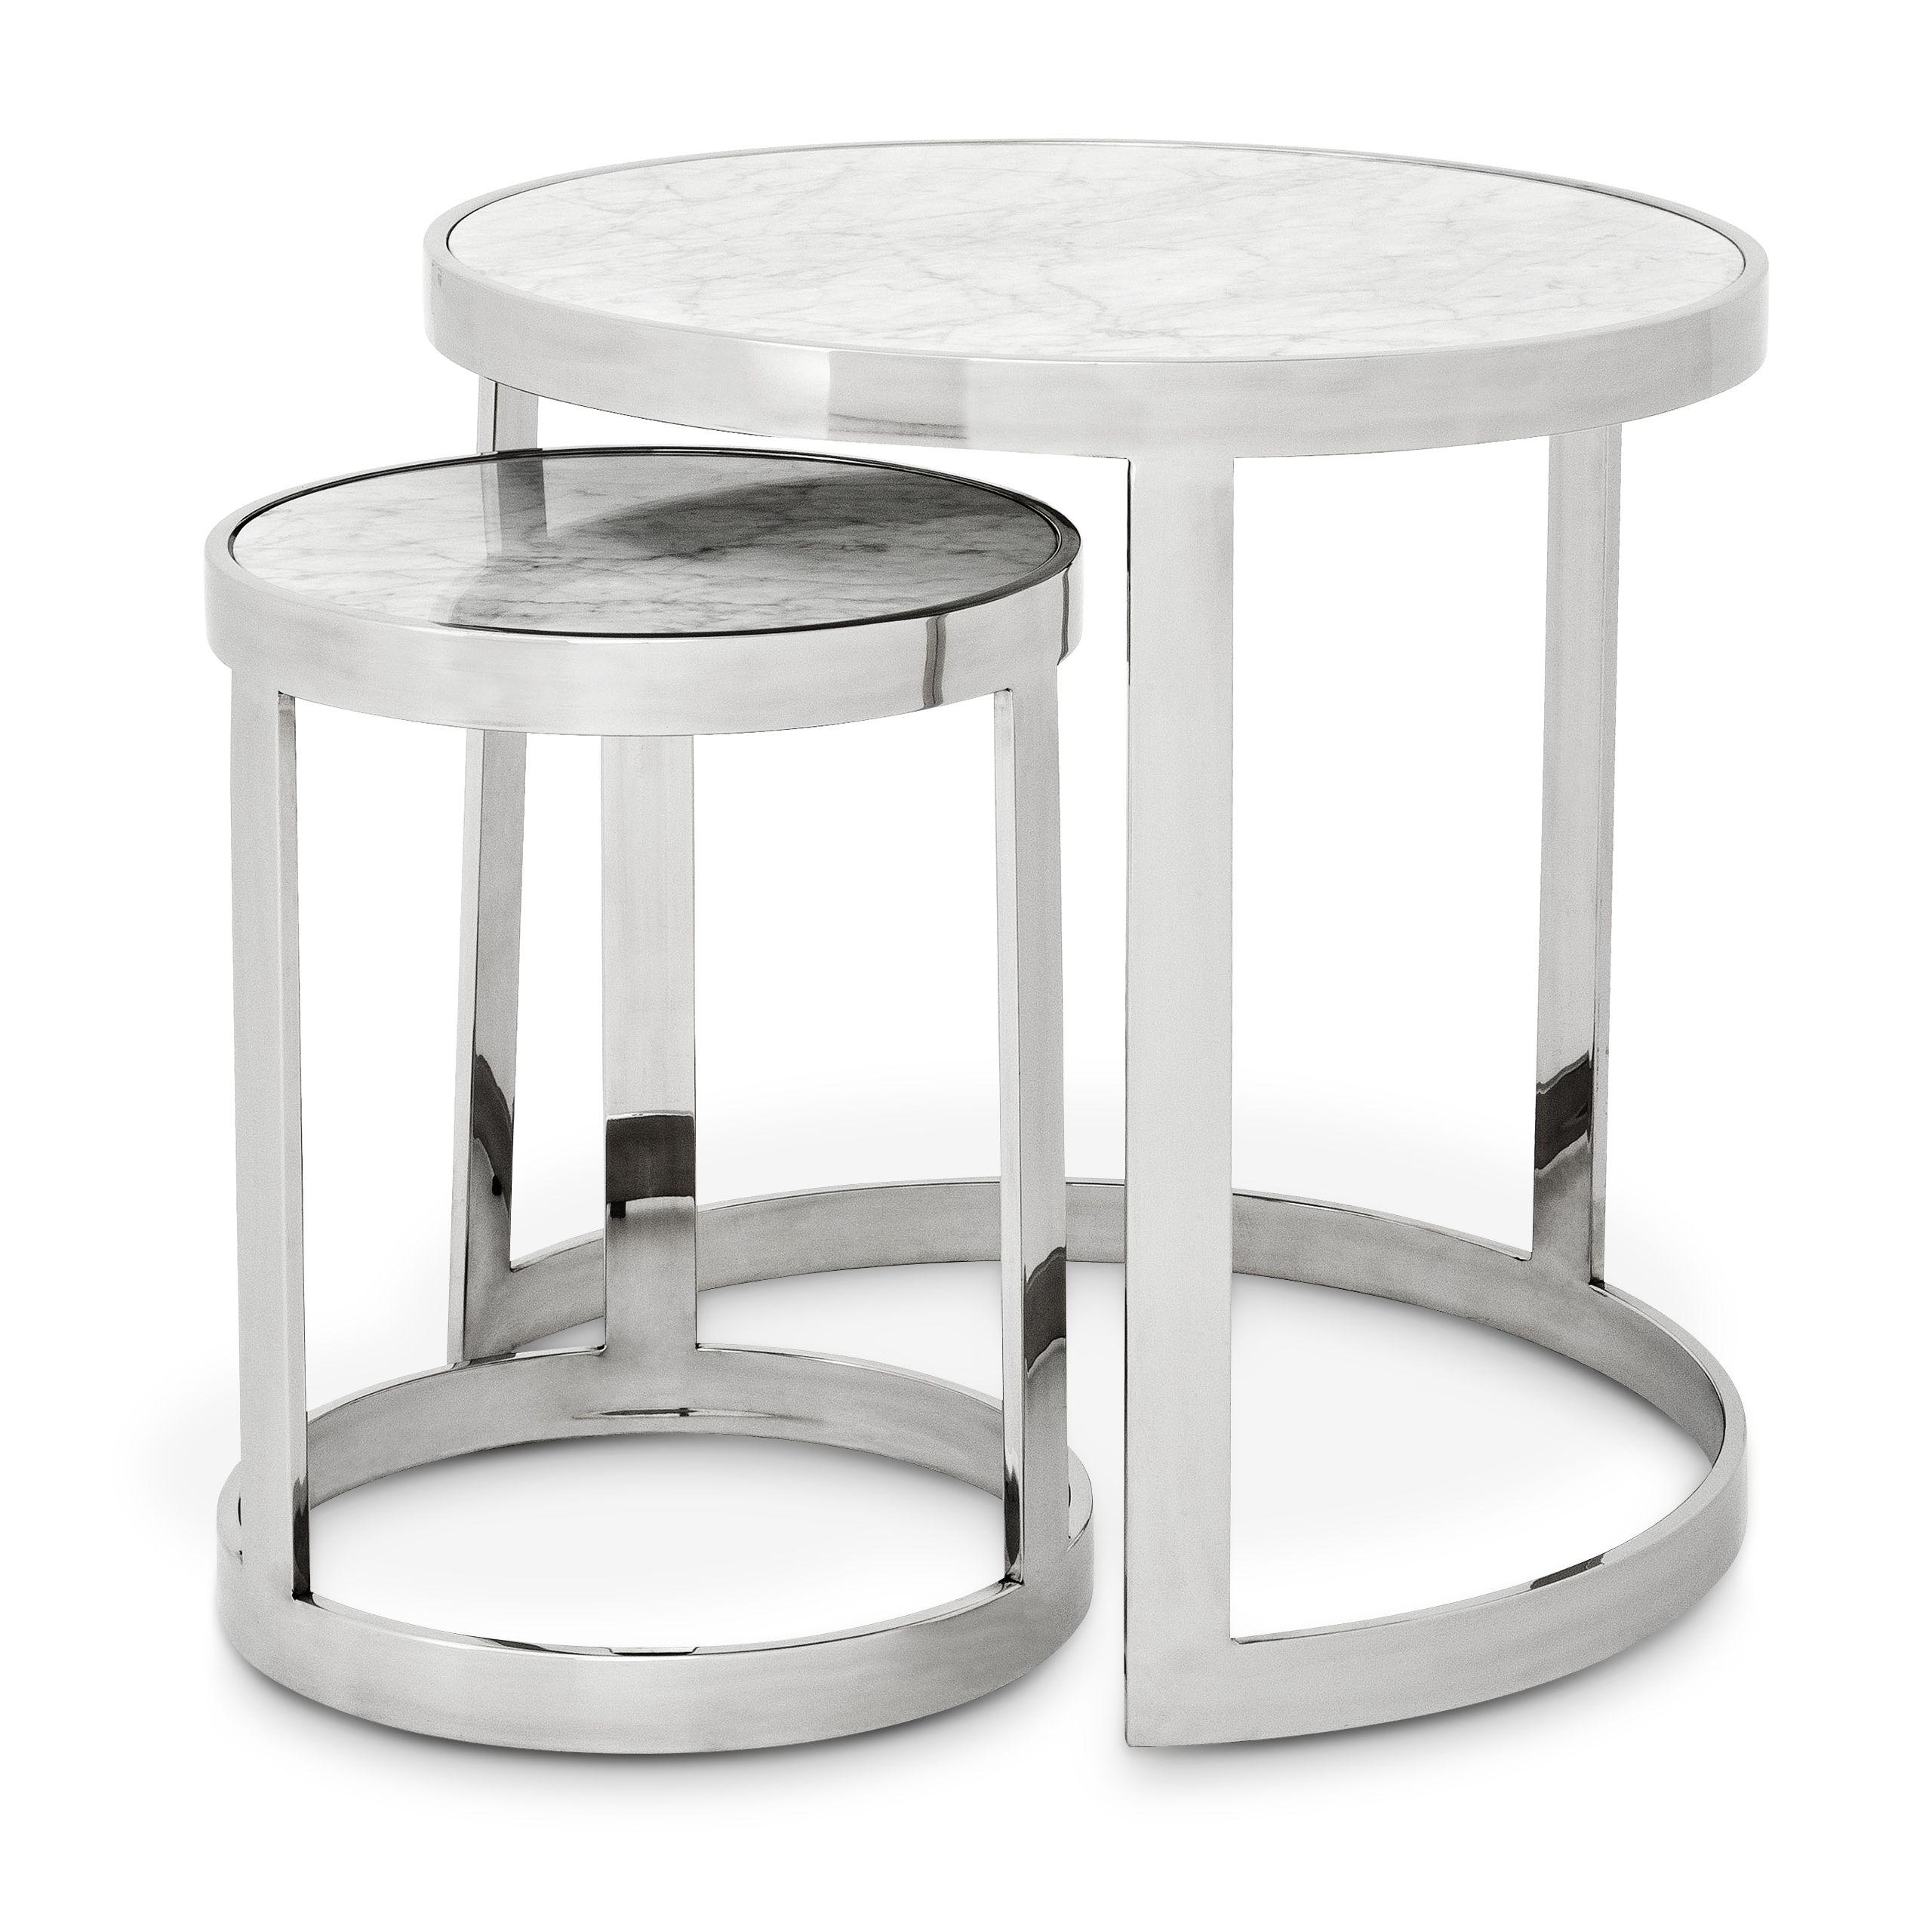 Купить Приставной столик Side Table Fletcher set of 2 в интернет-магазине roooms.ru